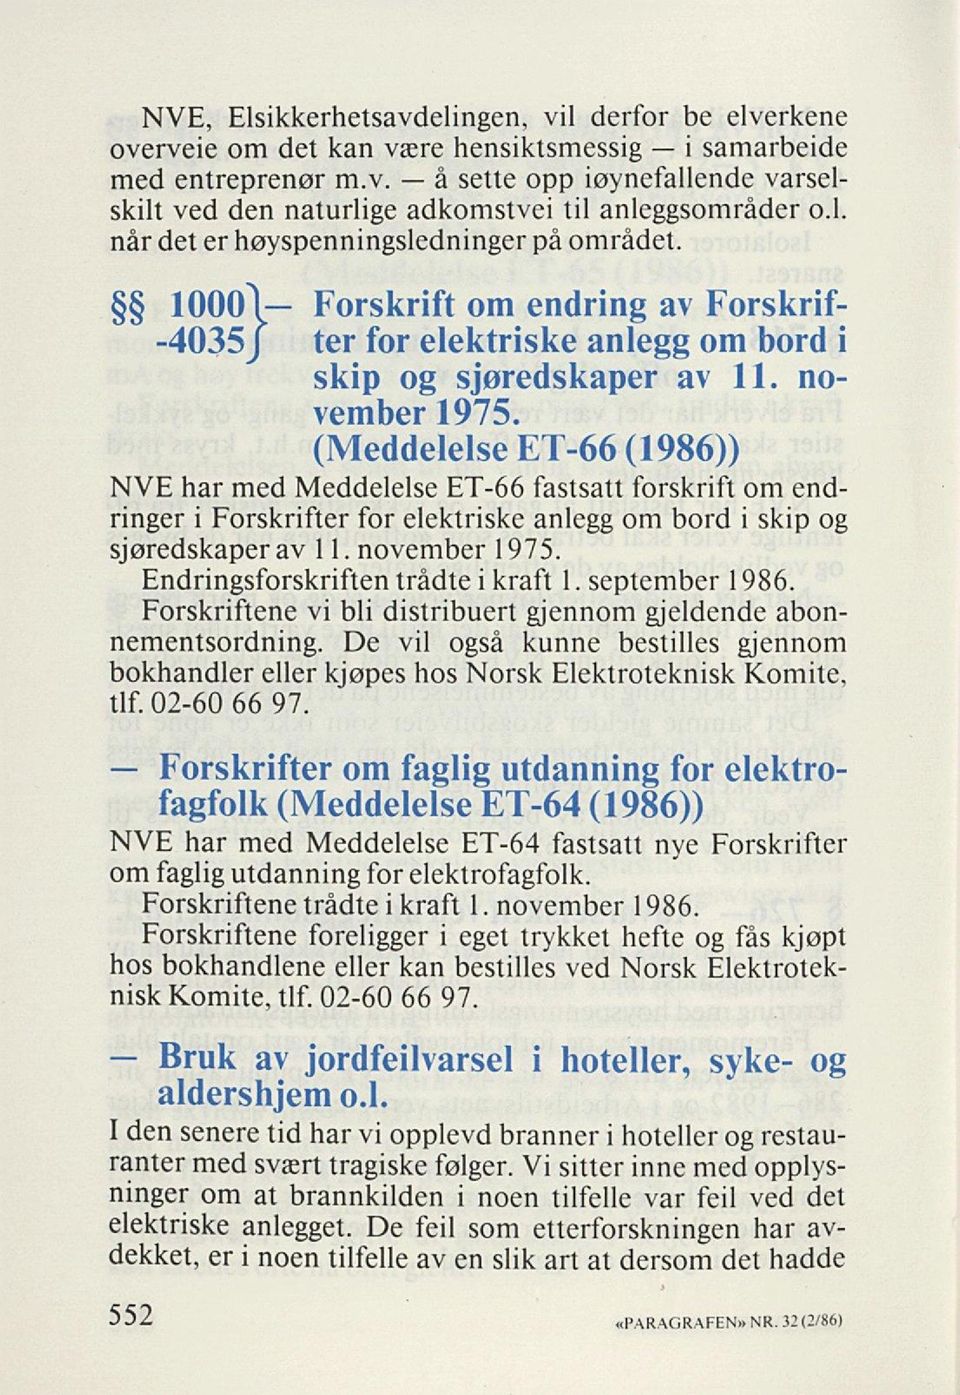 (Meddelelse ET-66 (1986)) NVE har med Meddelelse ET-66 fastsatt forskrift om end ringer i Forskrifter for elektriske anlegg om bord i skip og sjøredskaper av 1 1. november 1975.